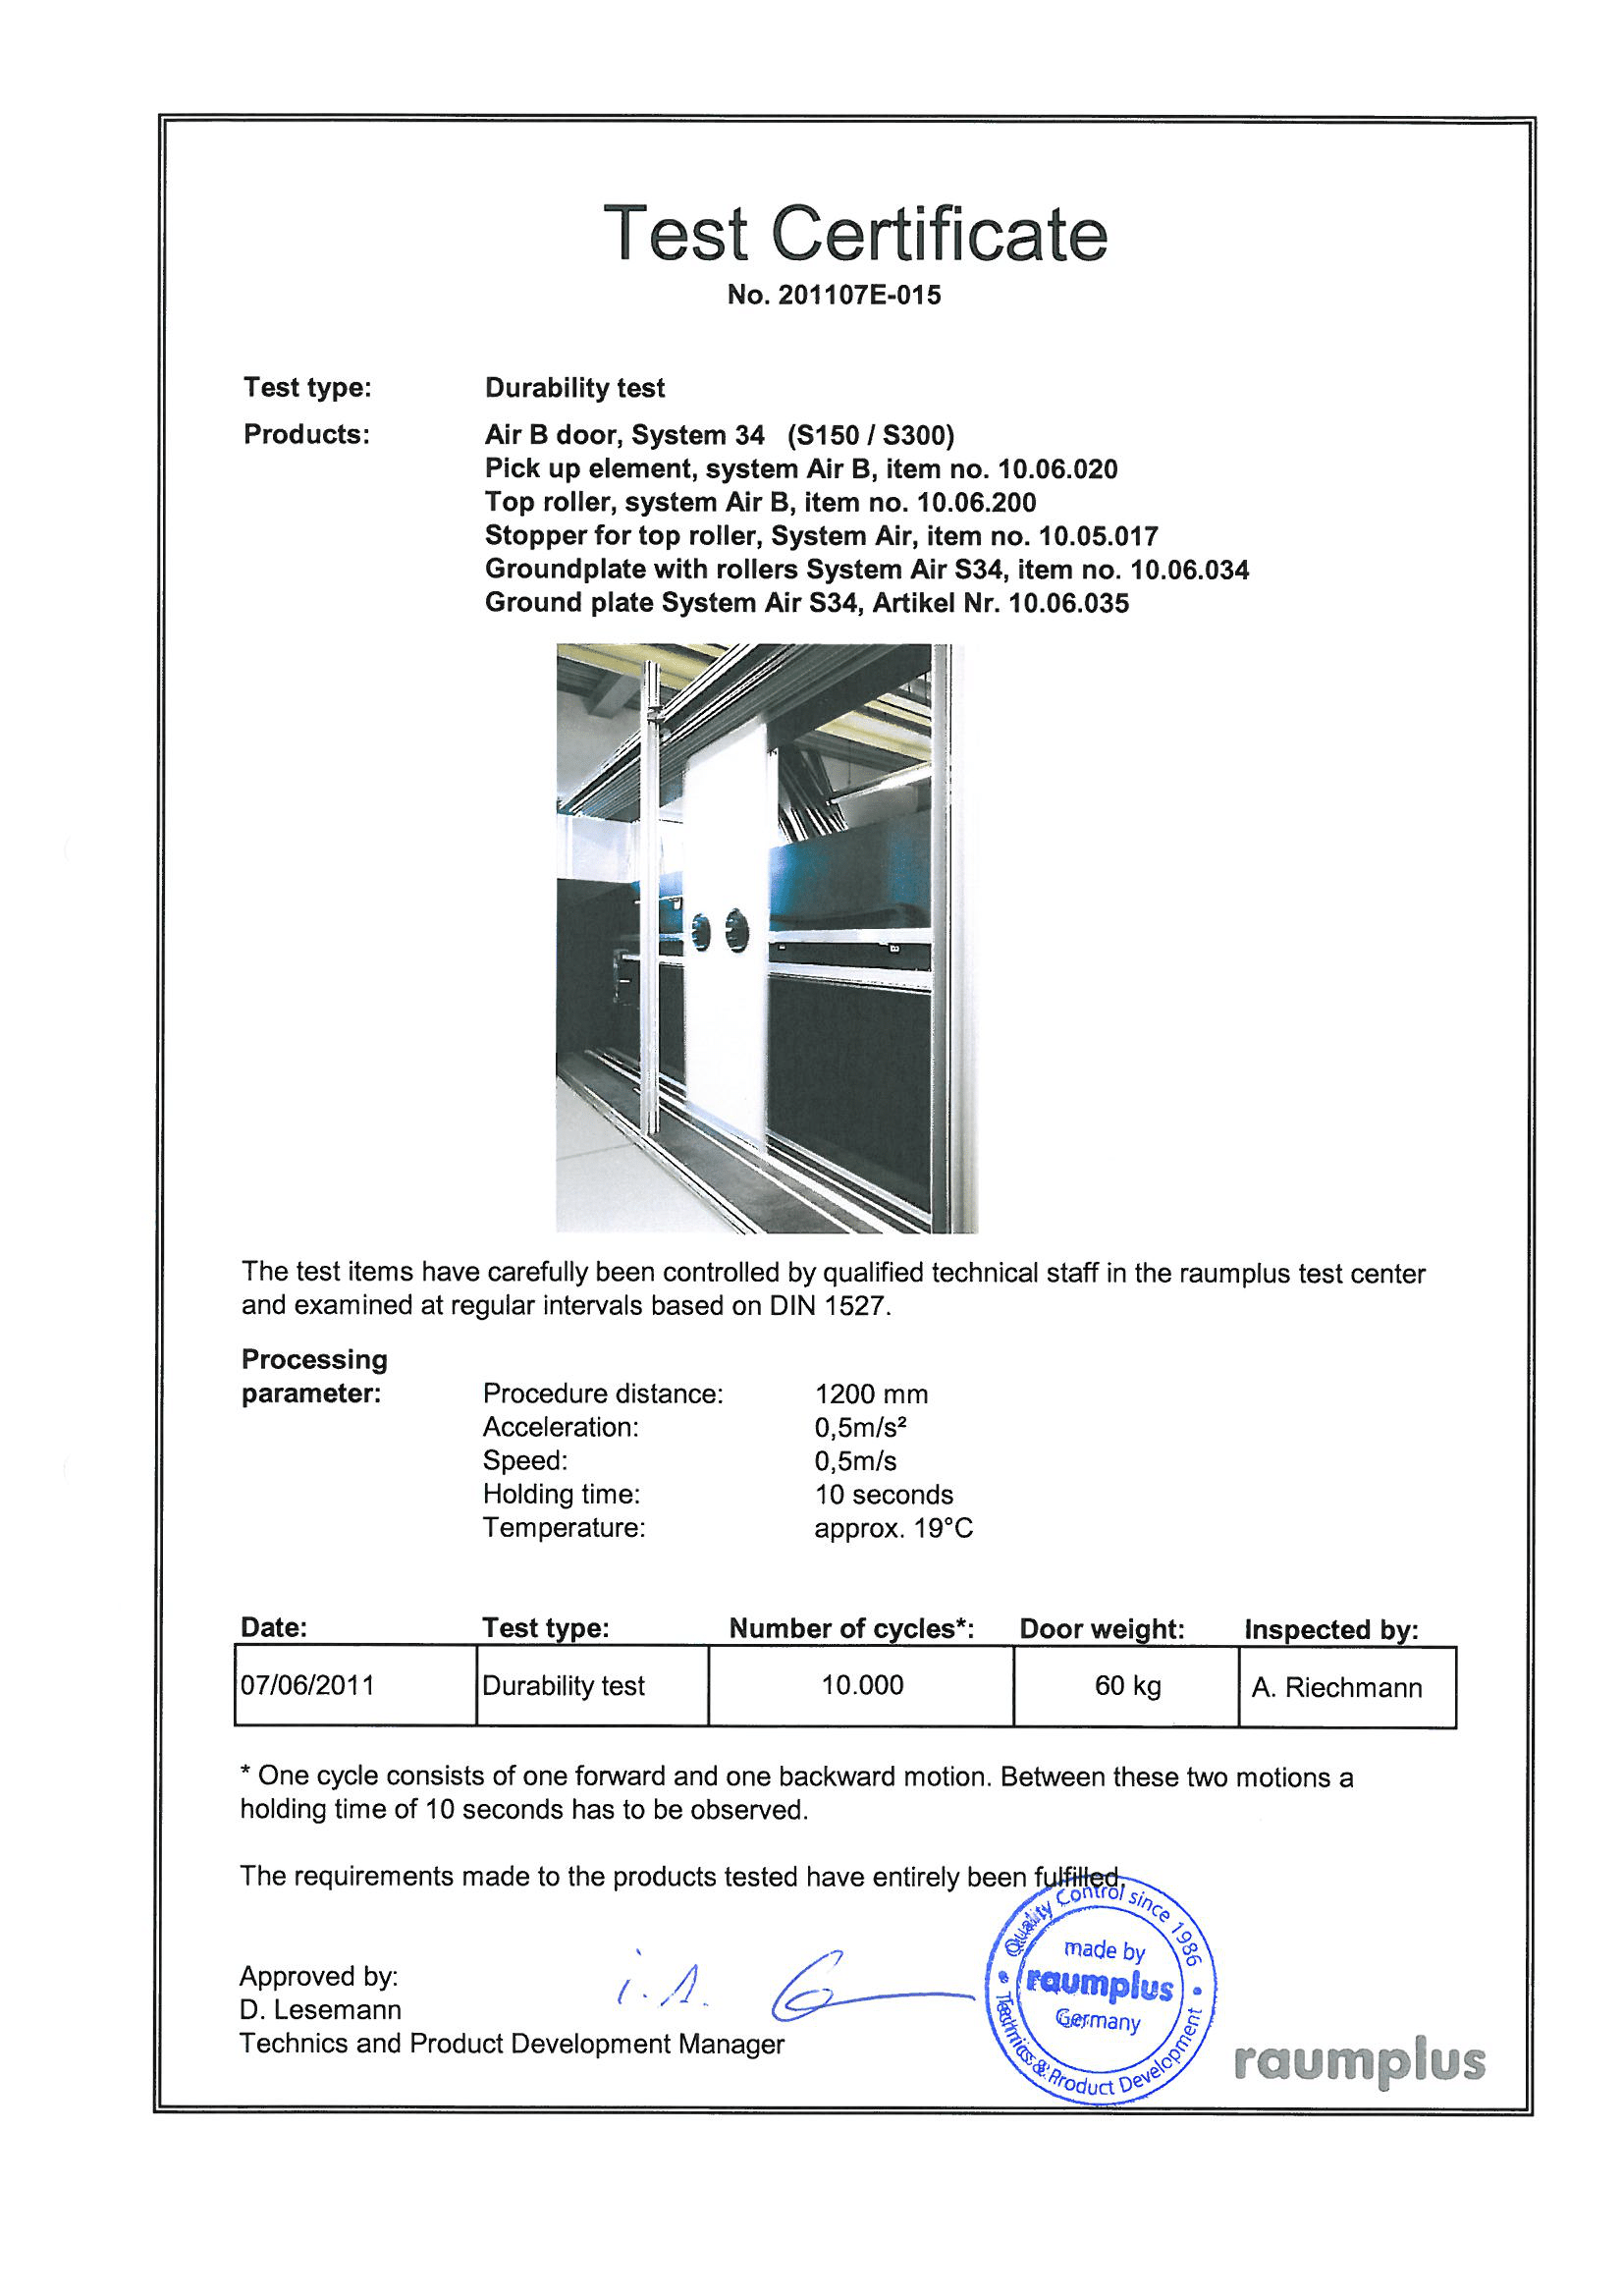 Сертификат тестирования системы подвесных перегородок AIR S34 (S150/300) raumplus<br />
<br />
Тестирование образцов тщательно контролировалось квалифицированным техническим персоналом в центре raumplus.<br />
<br />
Сертификат подтверждает успешное прохождение теста системы подвесных перегородок AIR S34 (S150/300) raumplus следующими исходными данными:<br />
Артикулы комплектующих, входящий в систему: 10.06.020, 10.06.200, 10.05.017, 10.06.034, 10.06.035.<br />
Вес перегородки 60 кг, 10.000 циклов.